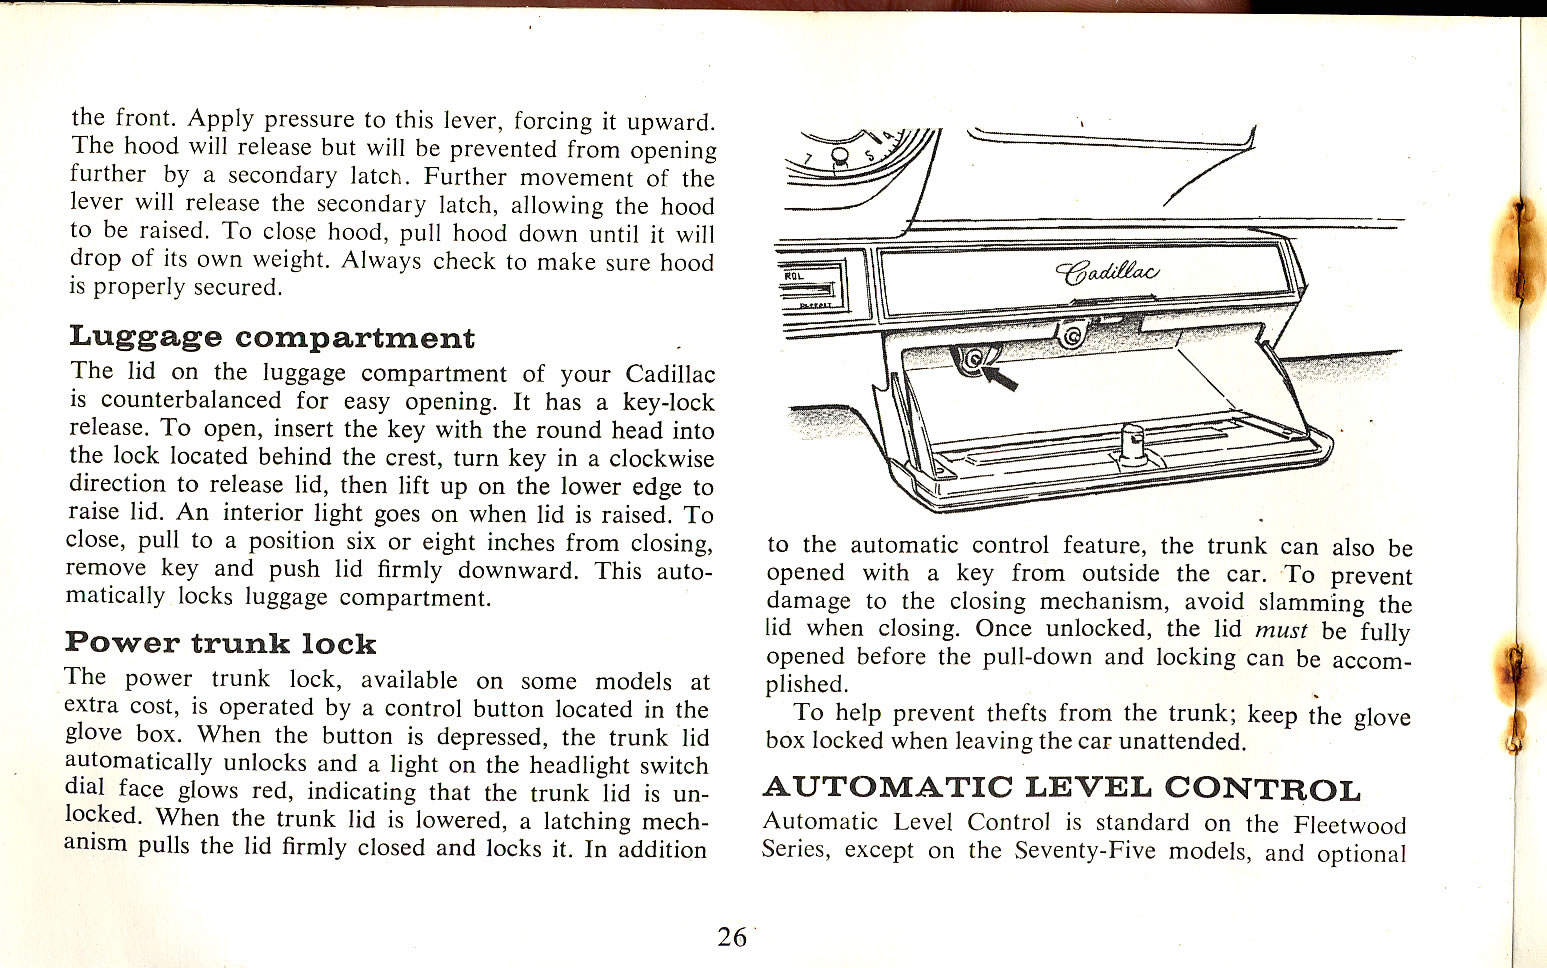 1965 Cadillac Manual-26